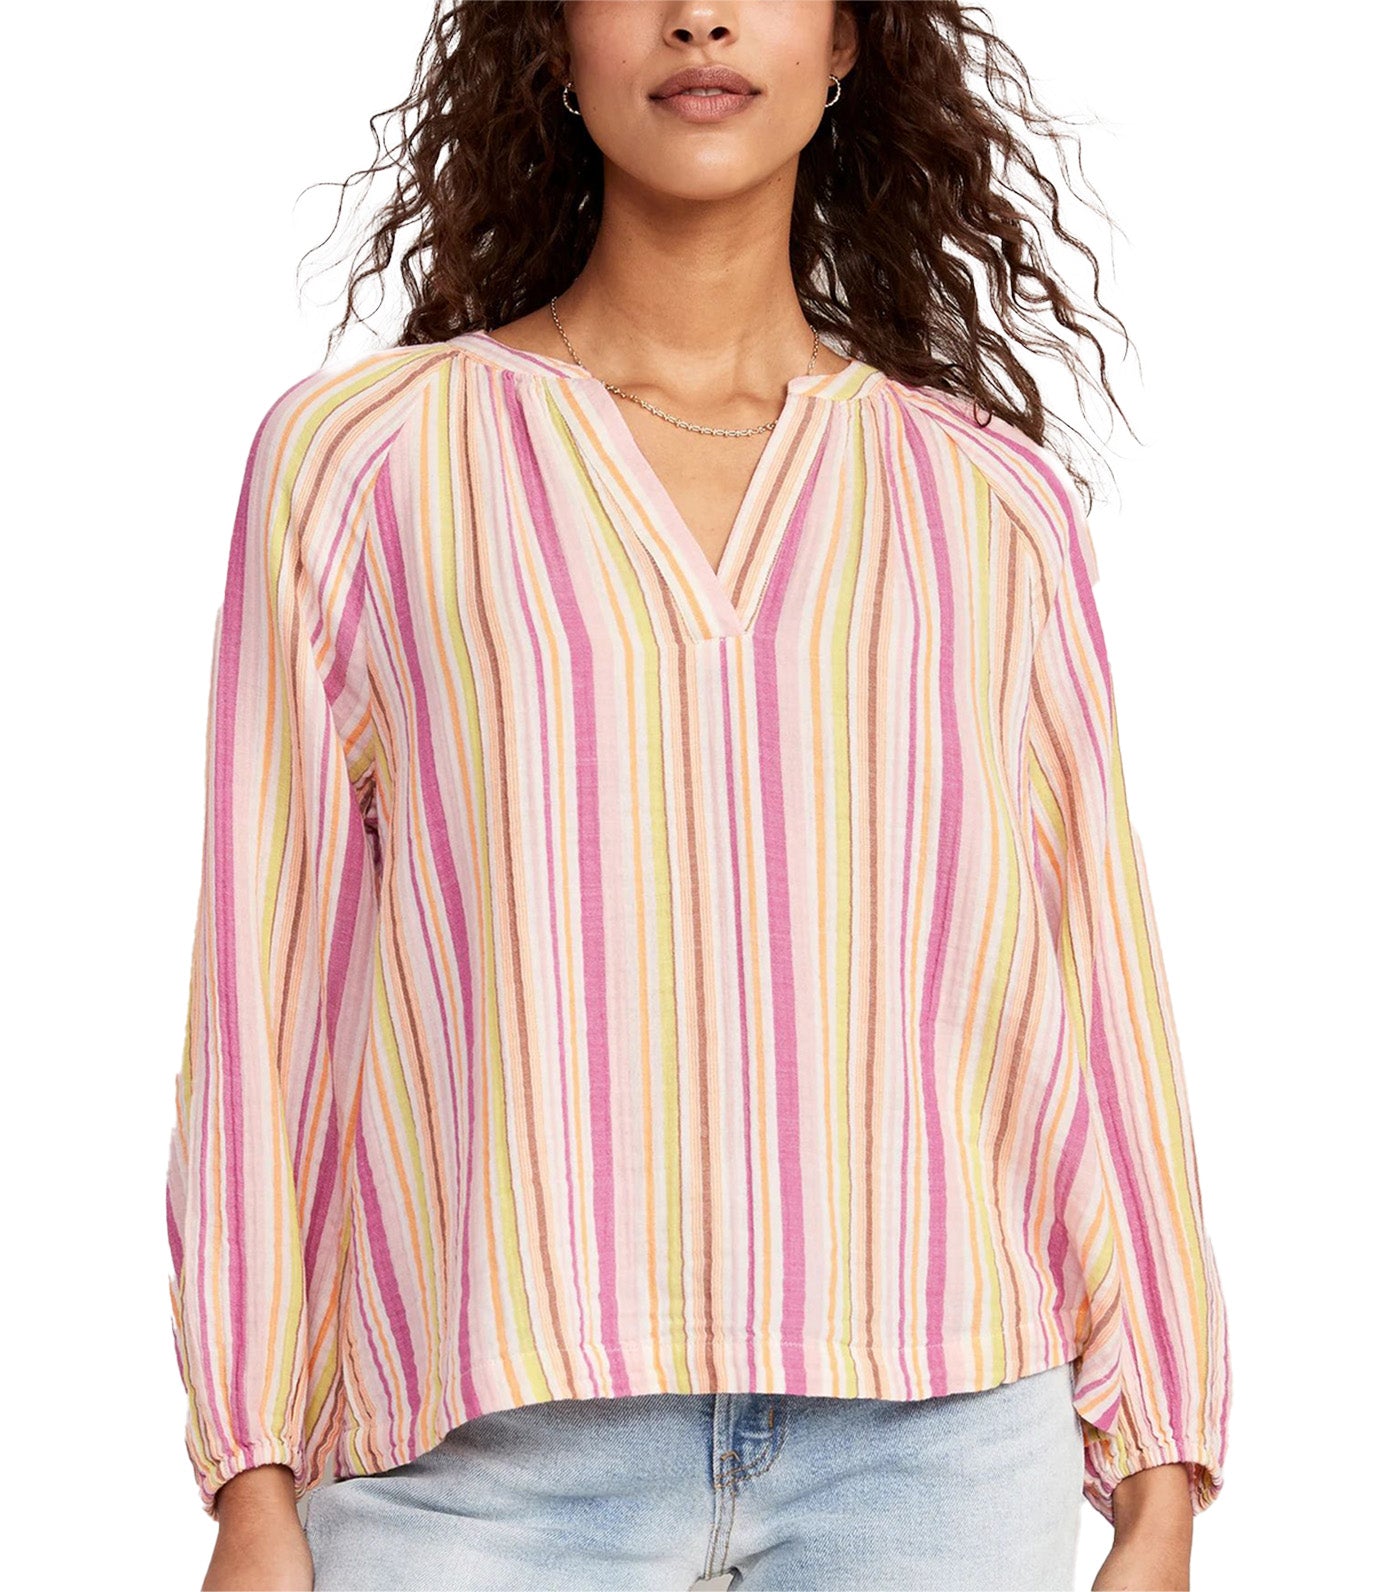 Long-Sleeve Striped Split-Neck Top for Women Pink Multi Stripe